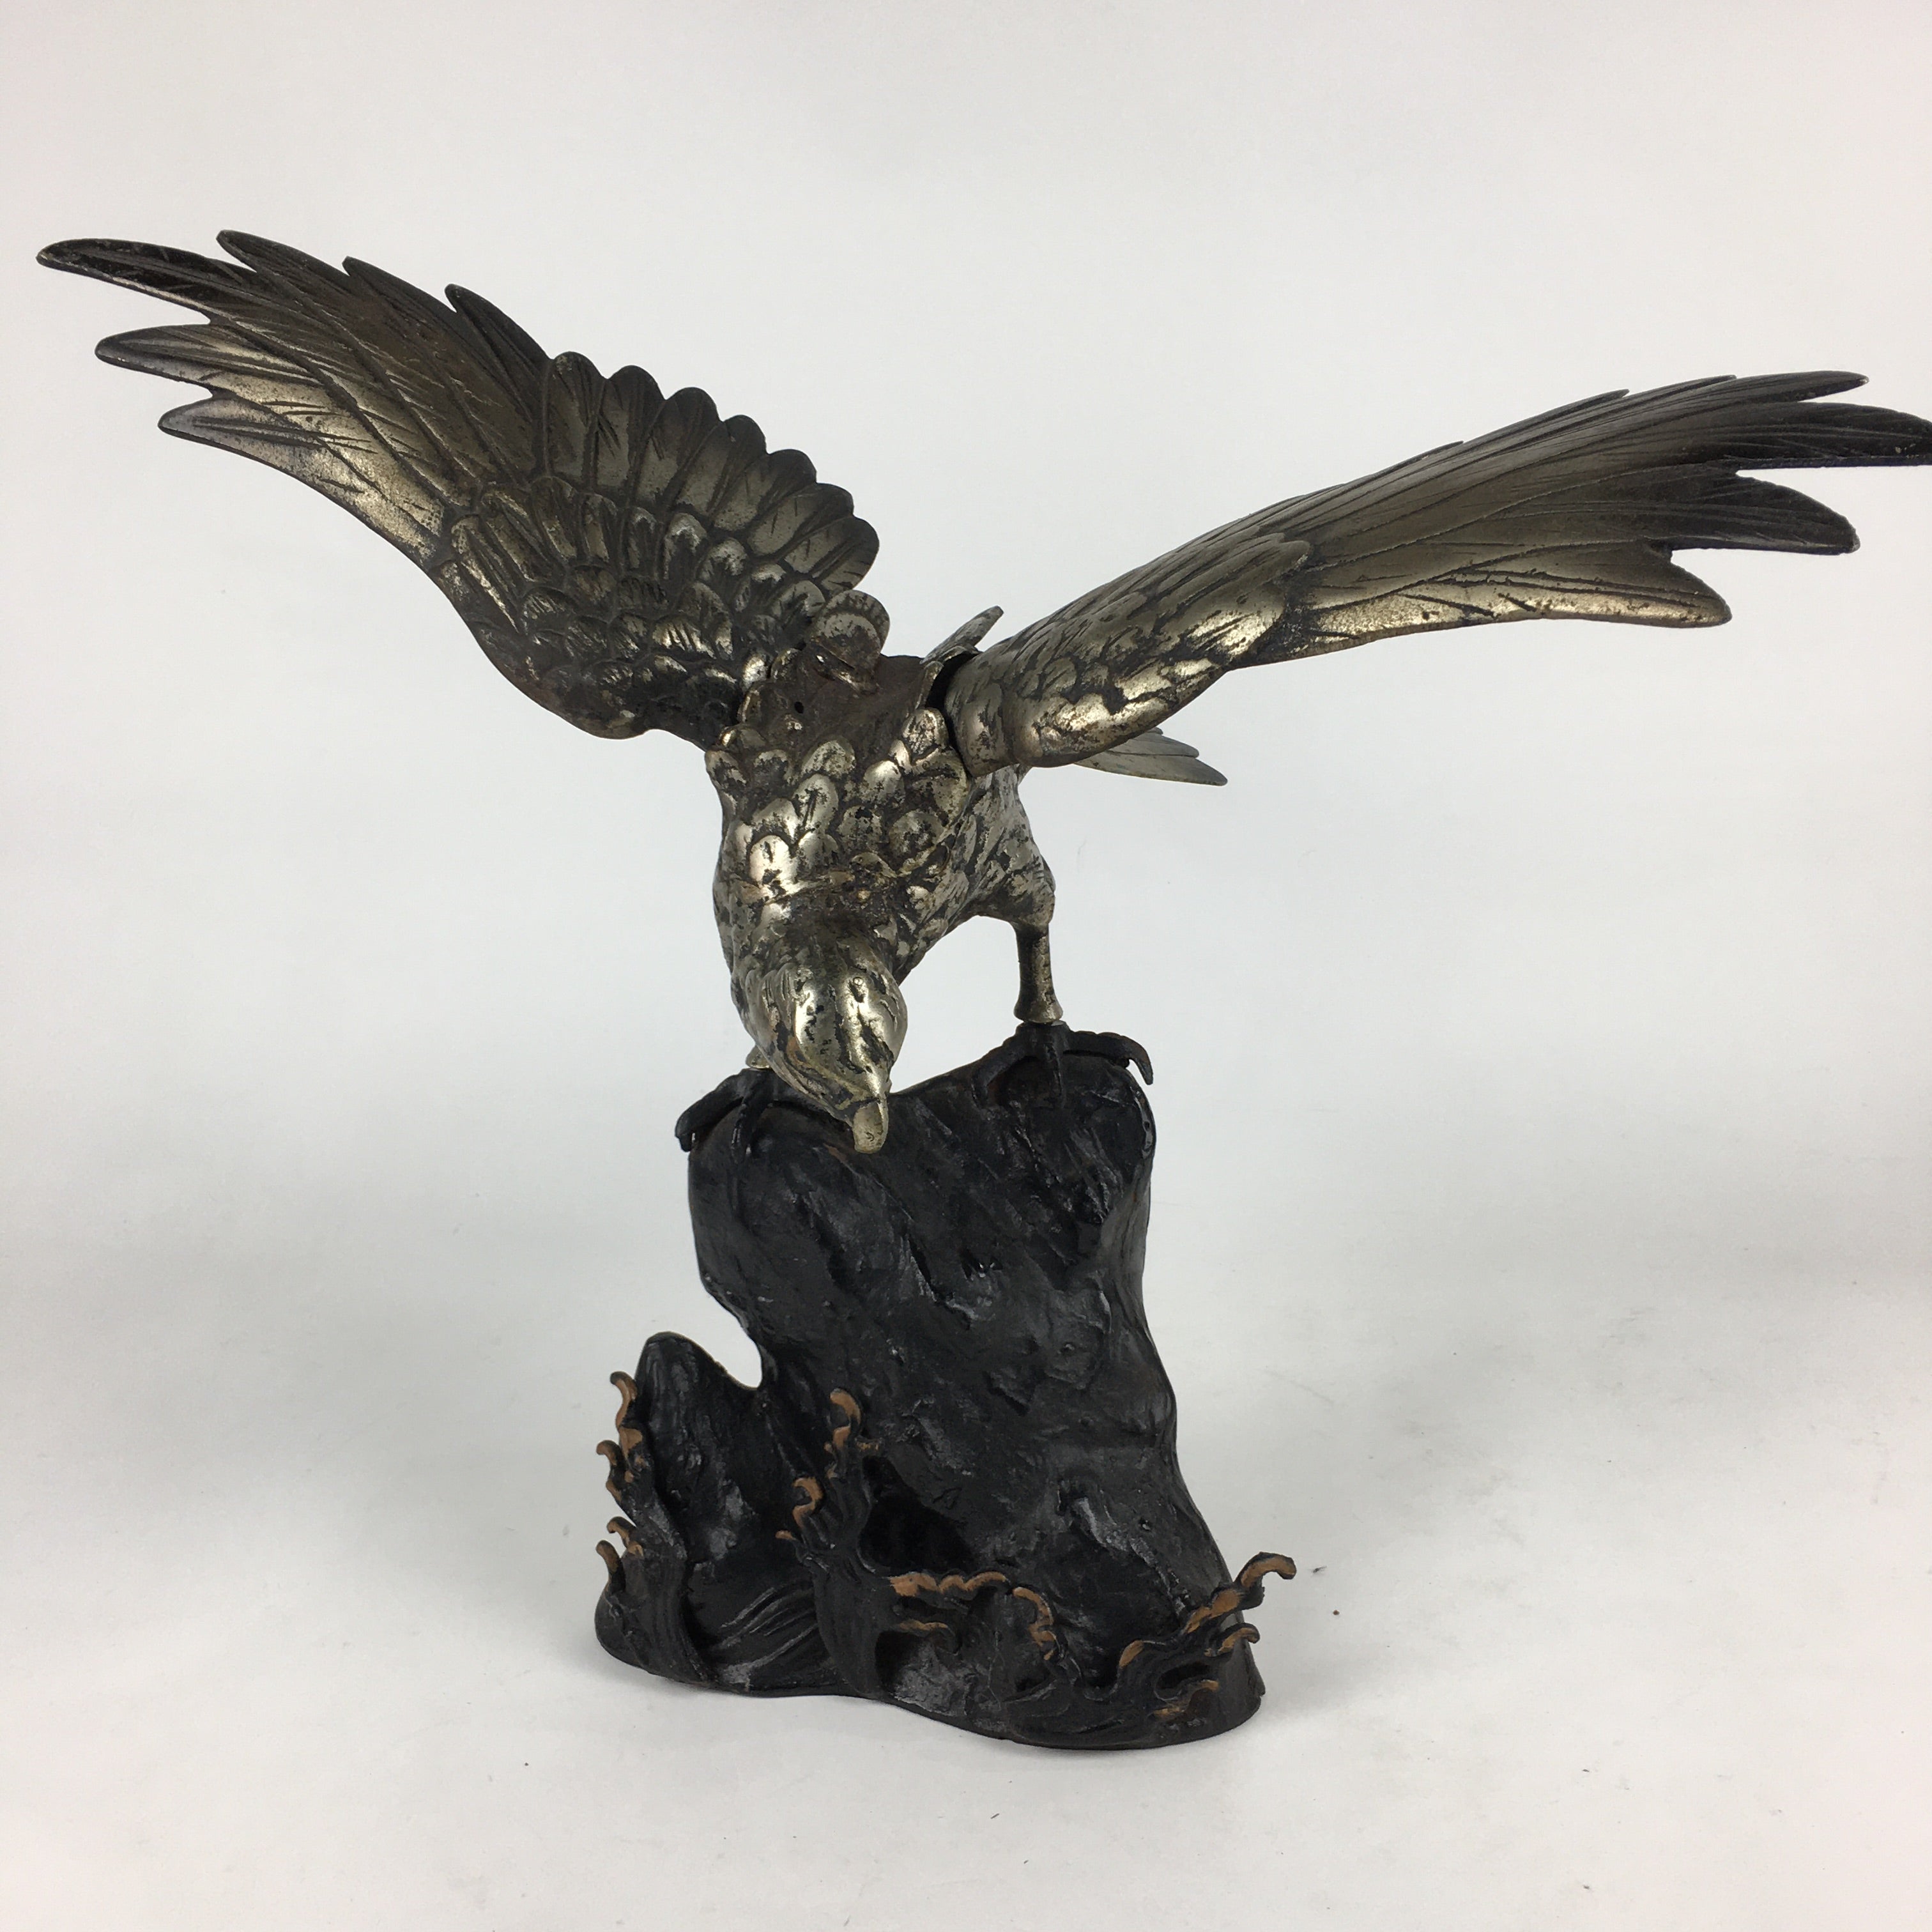 Japanese Iron Eagle Statue Vtg Display Ornament Okimono Gold Bird BD777